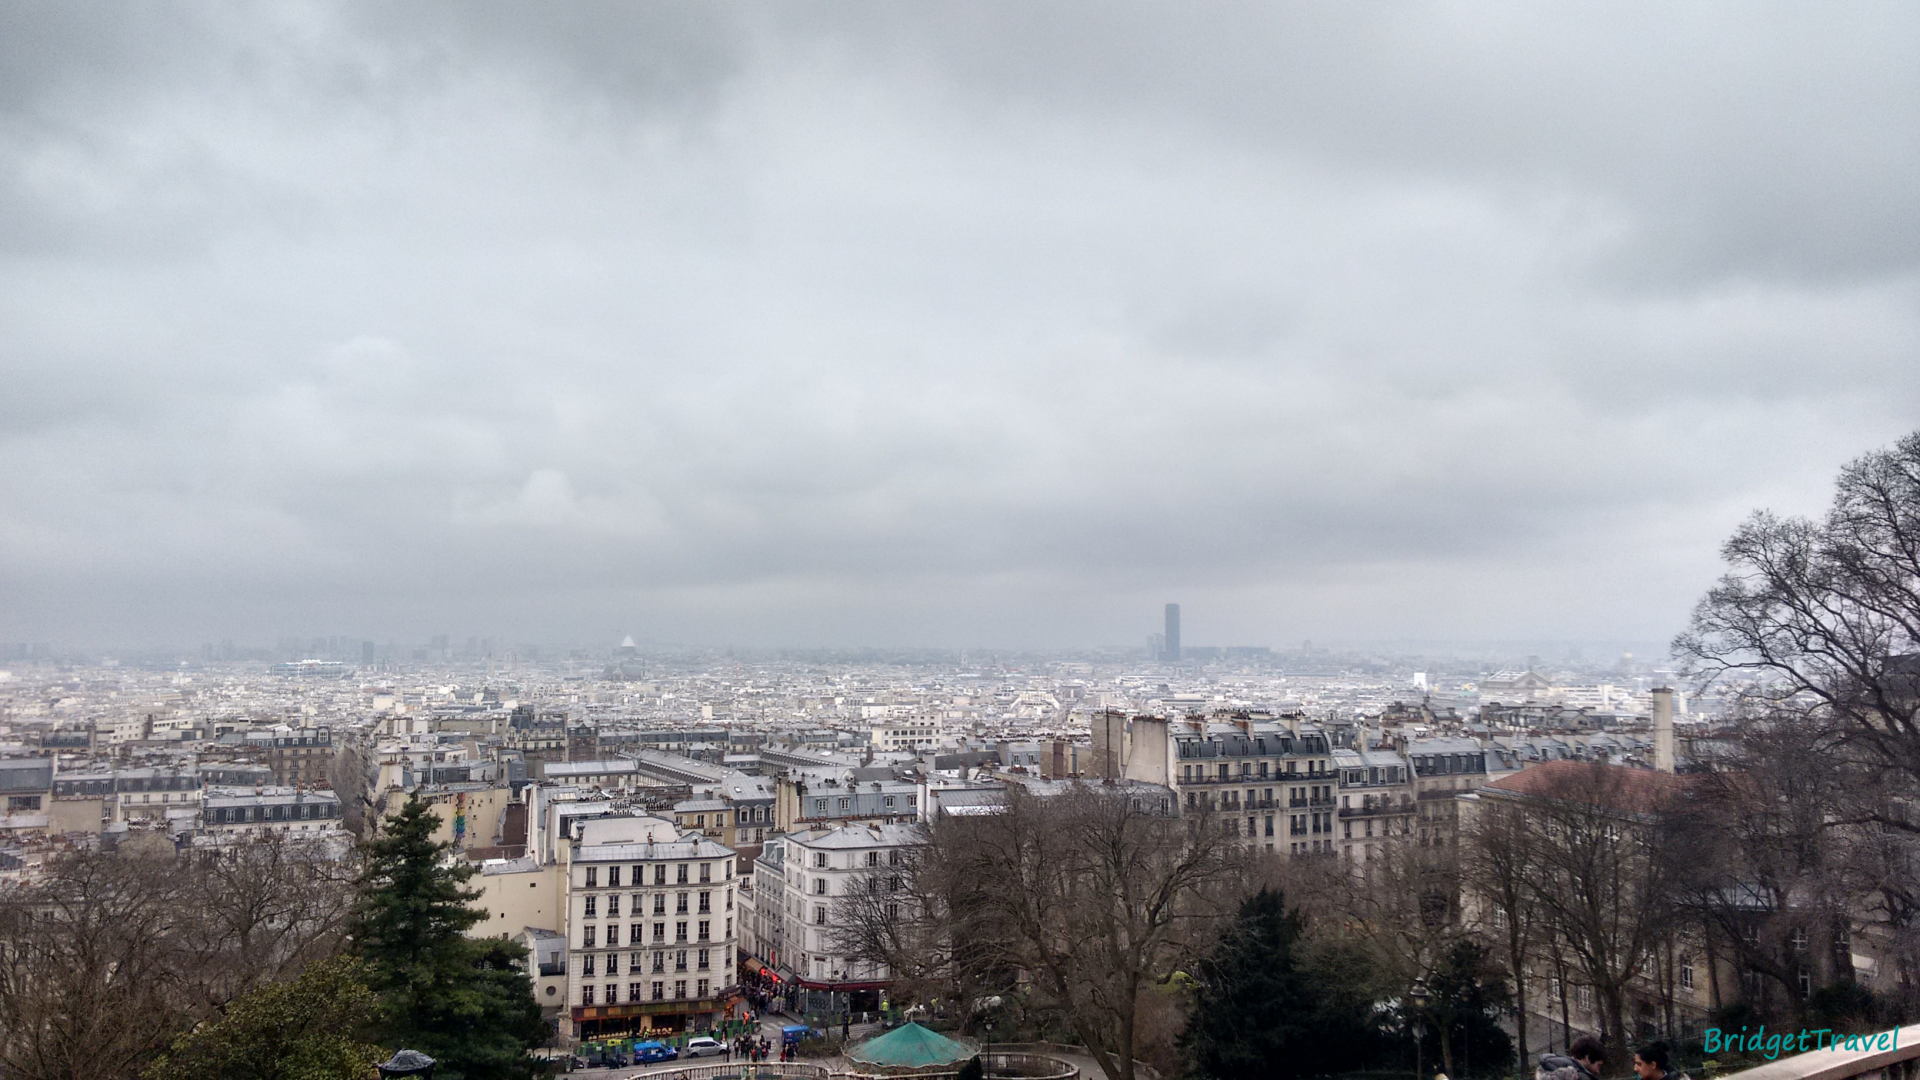 Widok na Paryż ze wzgórza z Katedry Najświętszego Serca Pana Jezusa, Francja